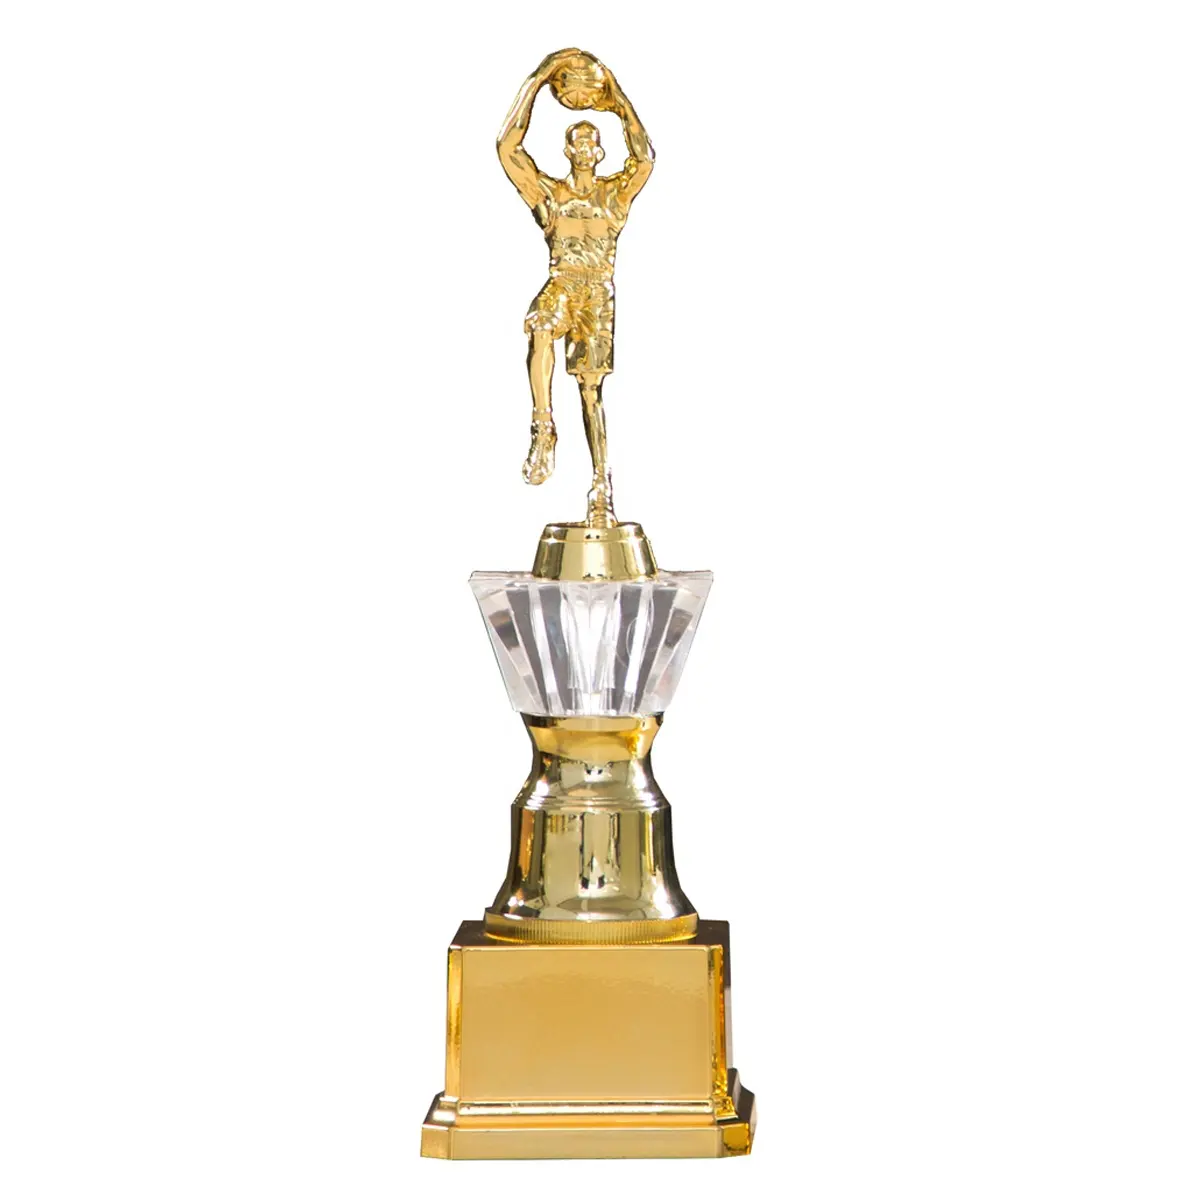 Trophée en plastique de la récompense de la publicité de la réunion annuelle de l'entreprise pour les jeux de basket-ball Champion Industries de l'assurance automobile